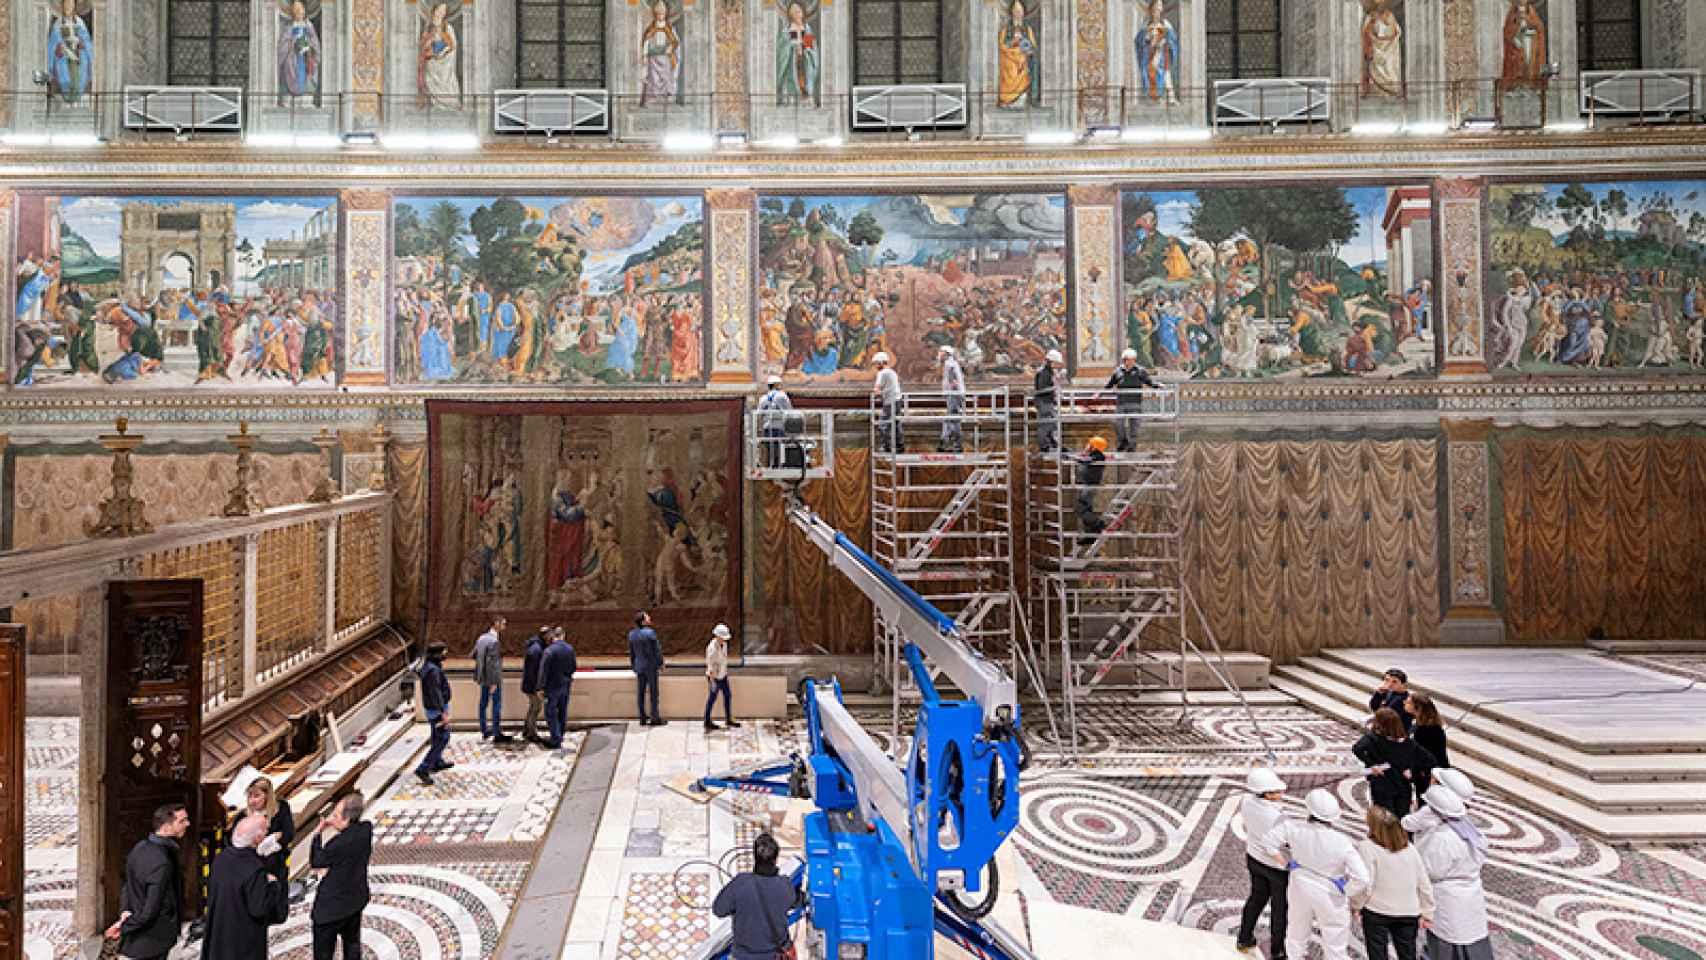 Estas obras de arte fueron un encargo del papa León X a Rafael.